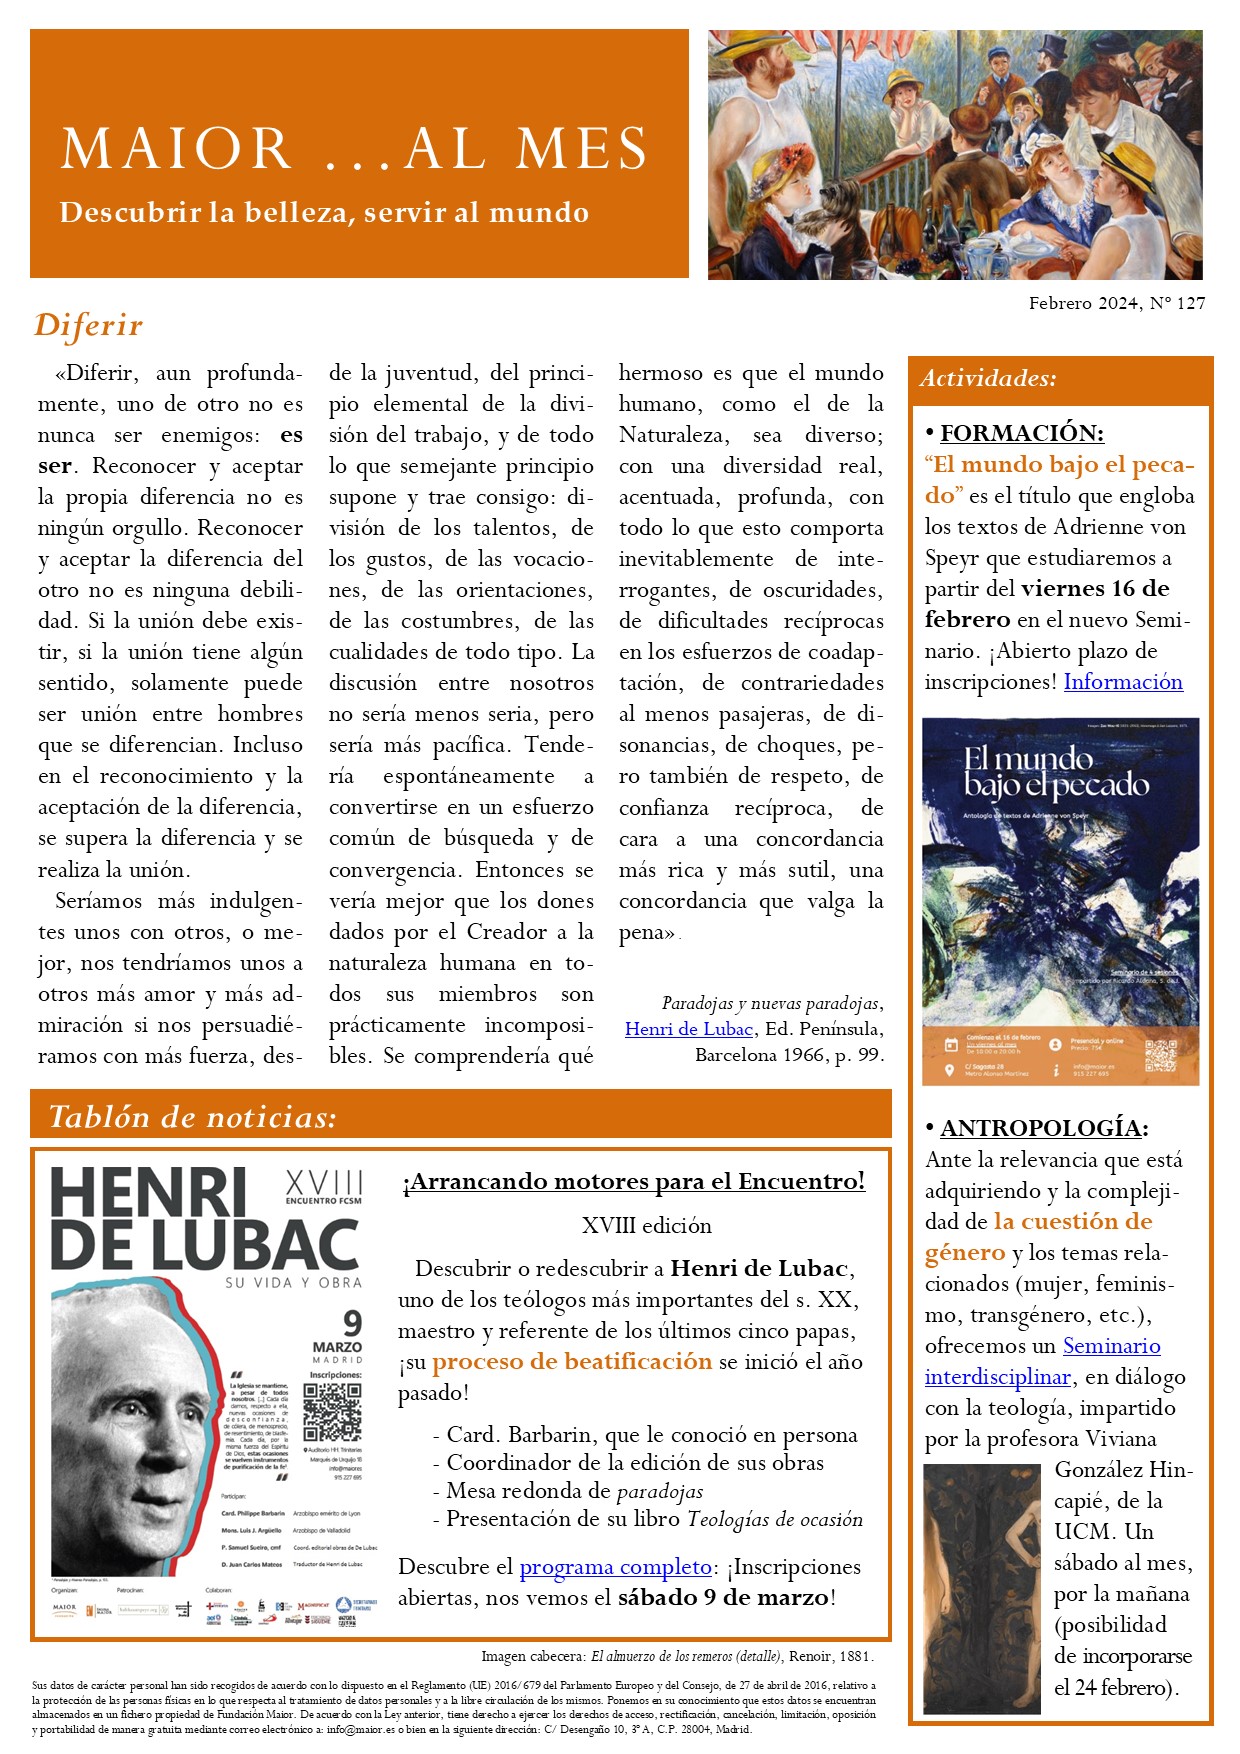 Boletín mensual de noticias y actividades de la Fundación Maior. Edición de febrero 2024